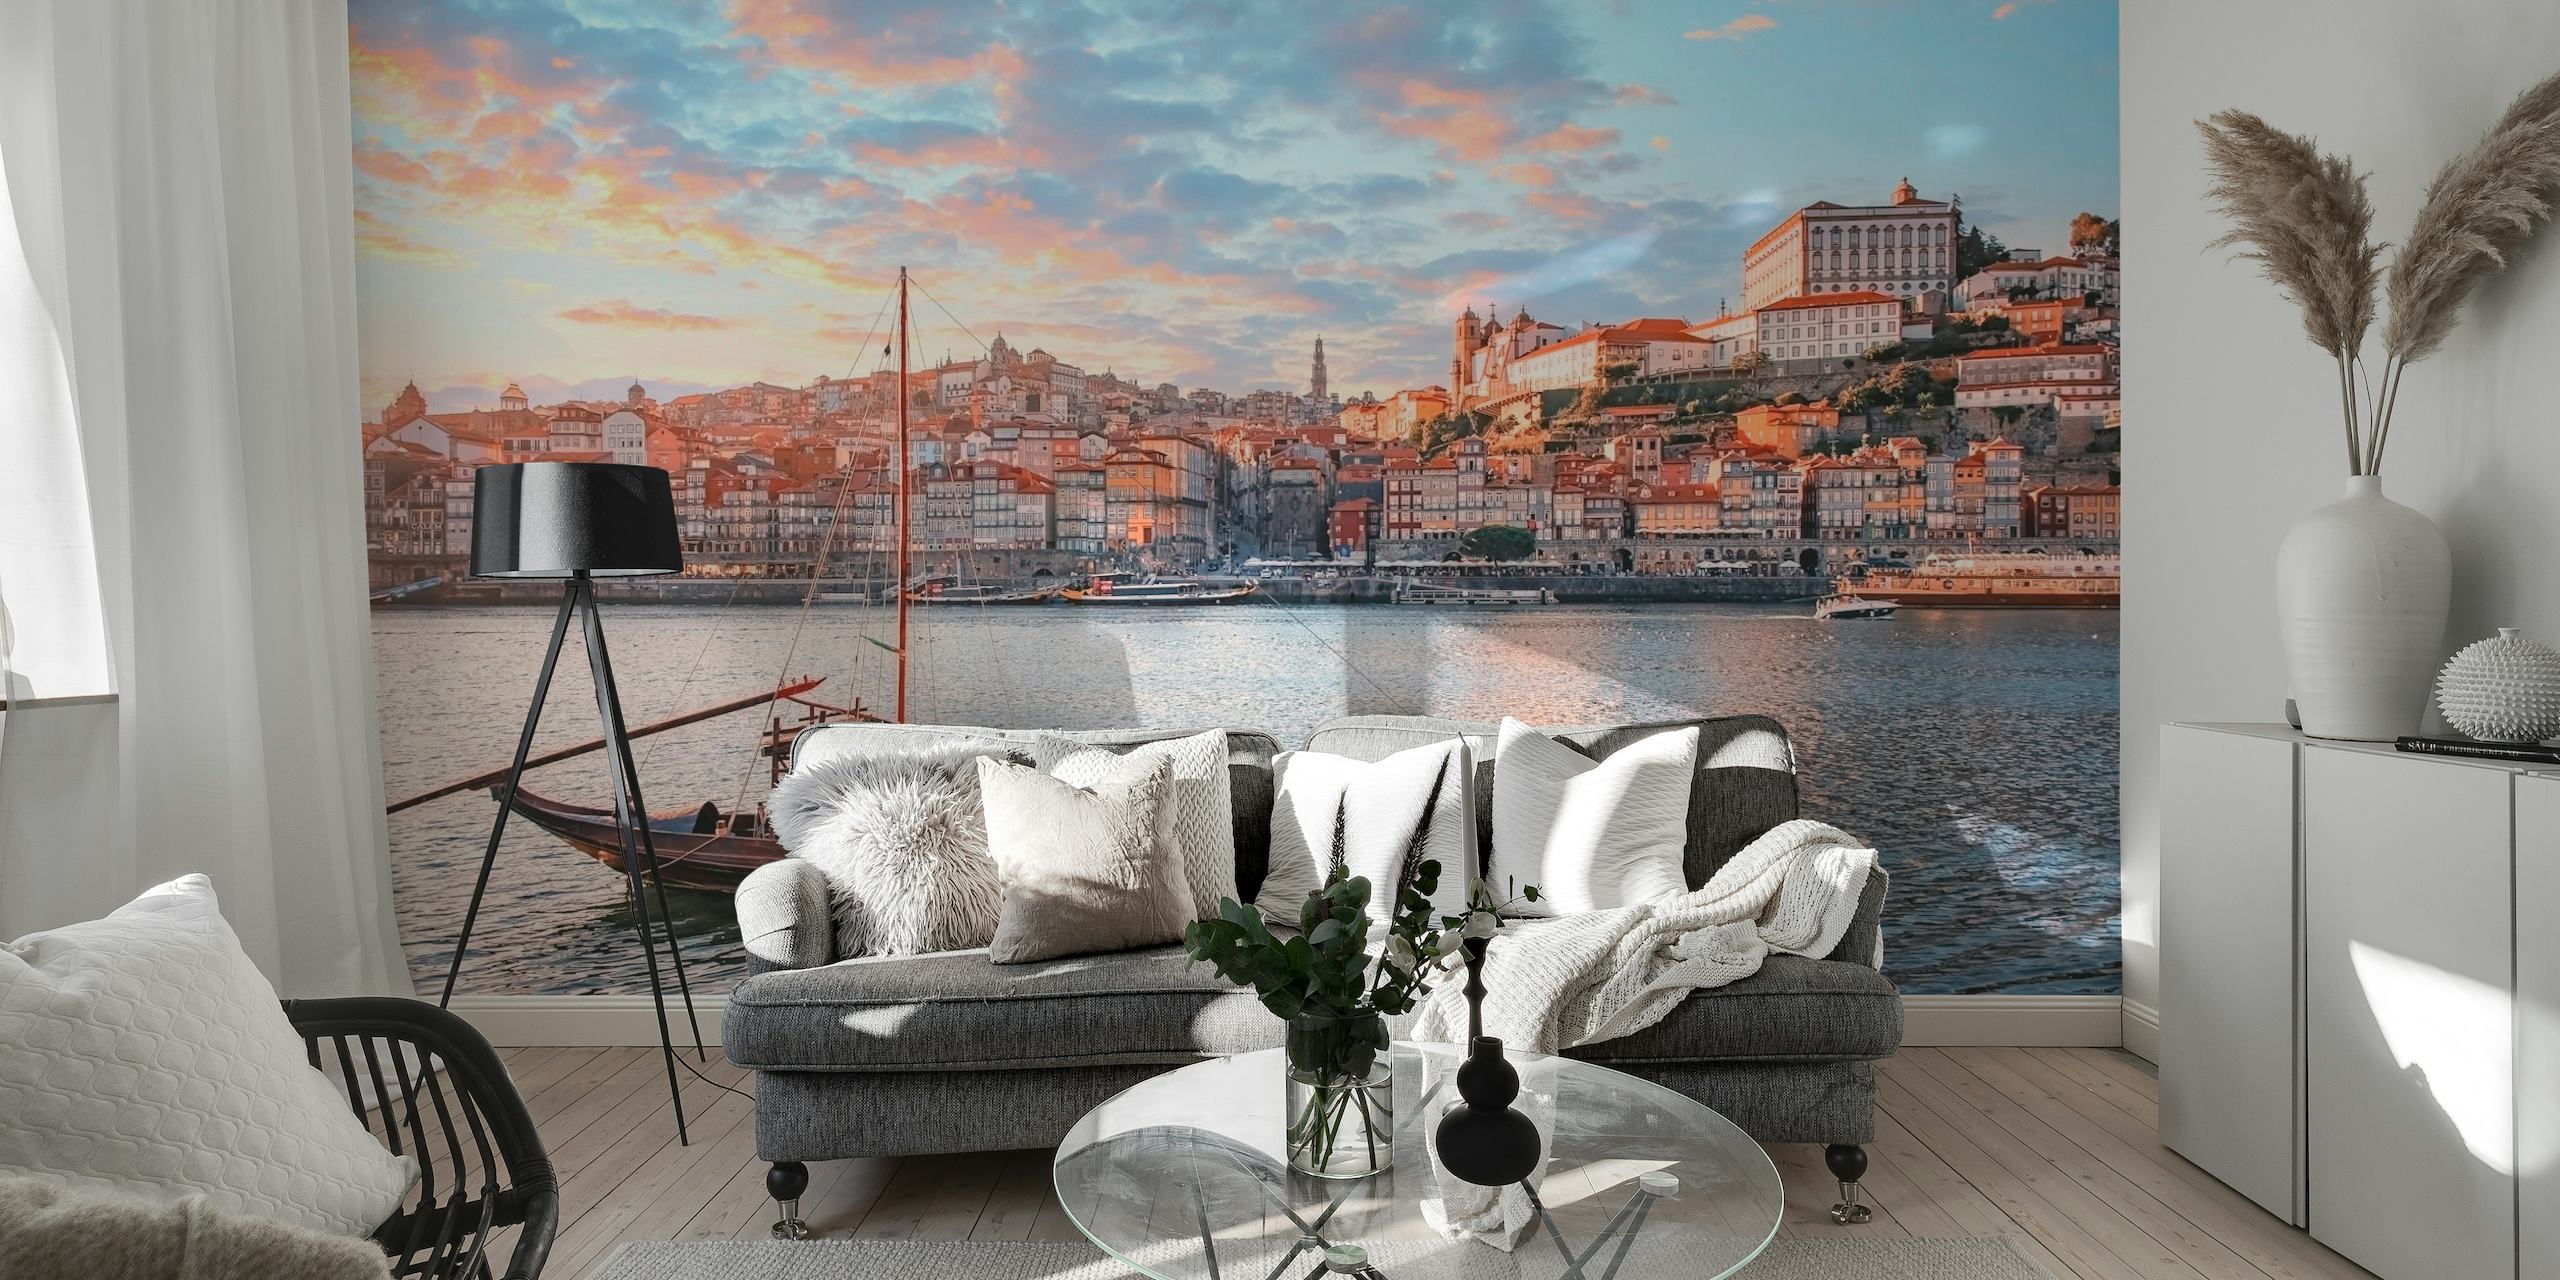 Vægmaleri af Portos bybillede ved solnedgang med terracotta-tage og en traditionel båd på Douro-floden